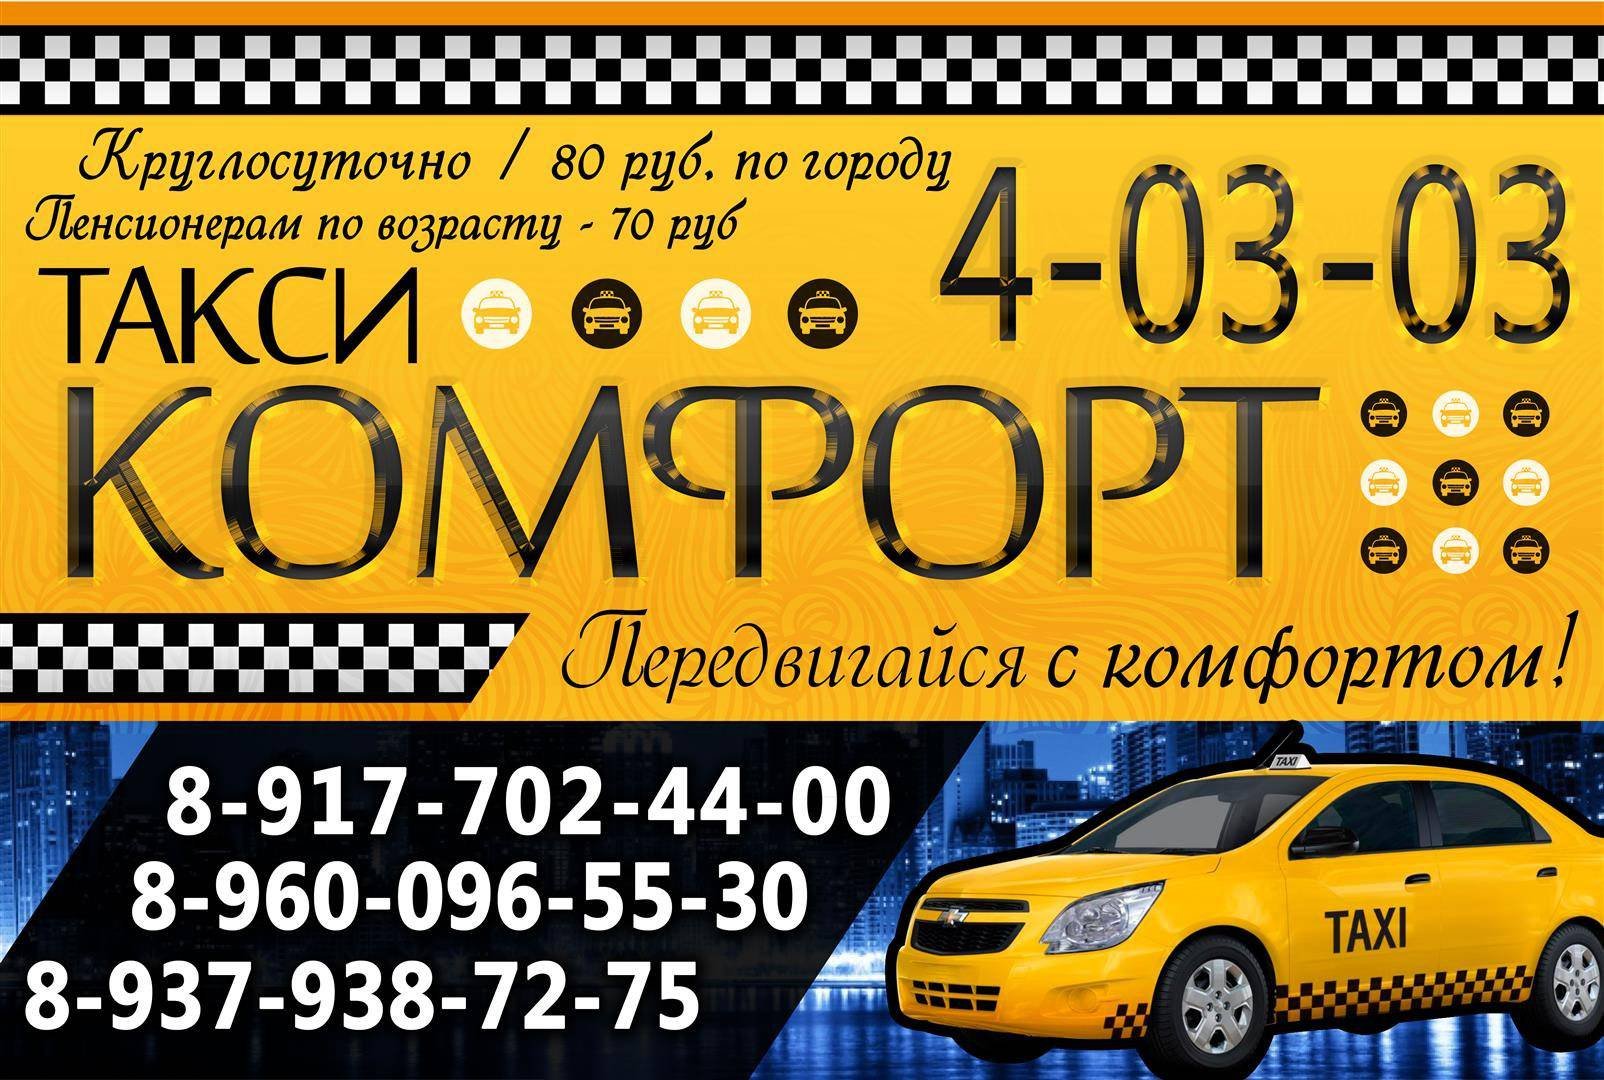 Такси тверь телефоны дешево. Комфорт такси такси. Баннер такси. Таксопарк комфорт. Реклама такси комфорт.